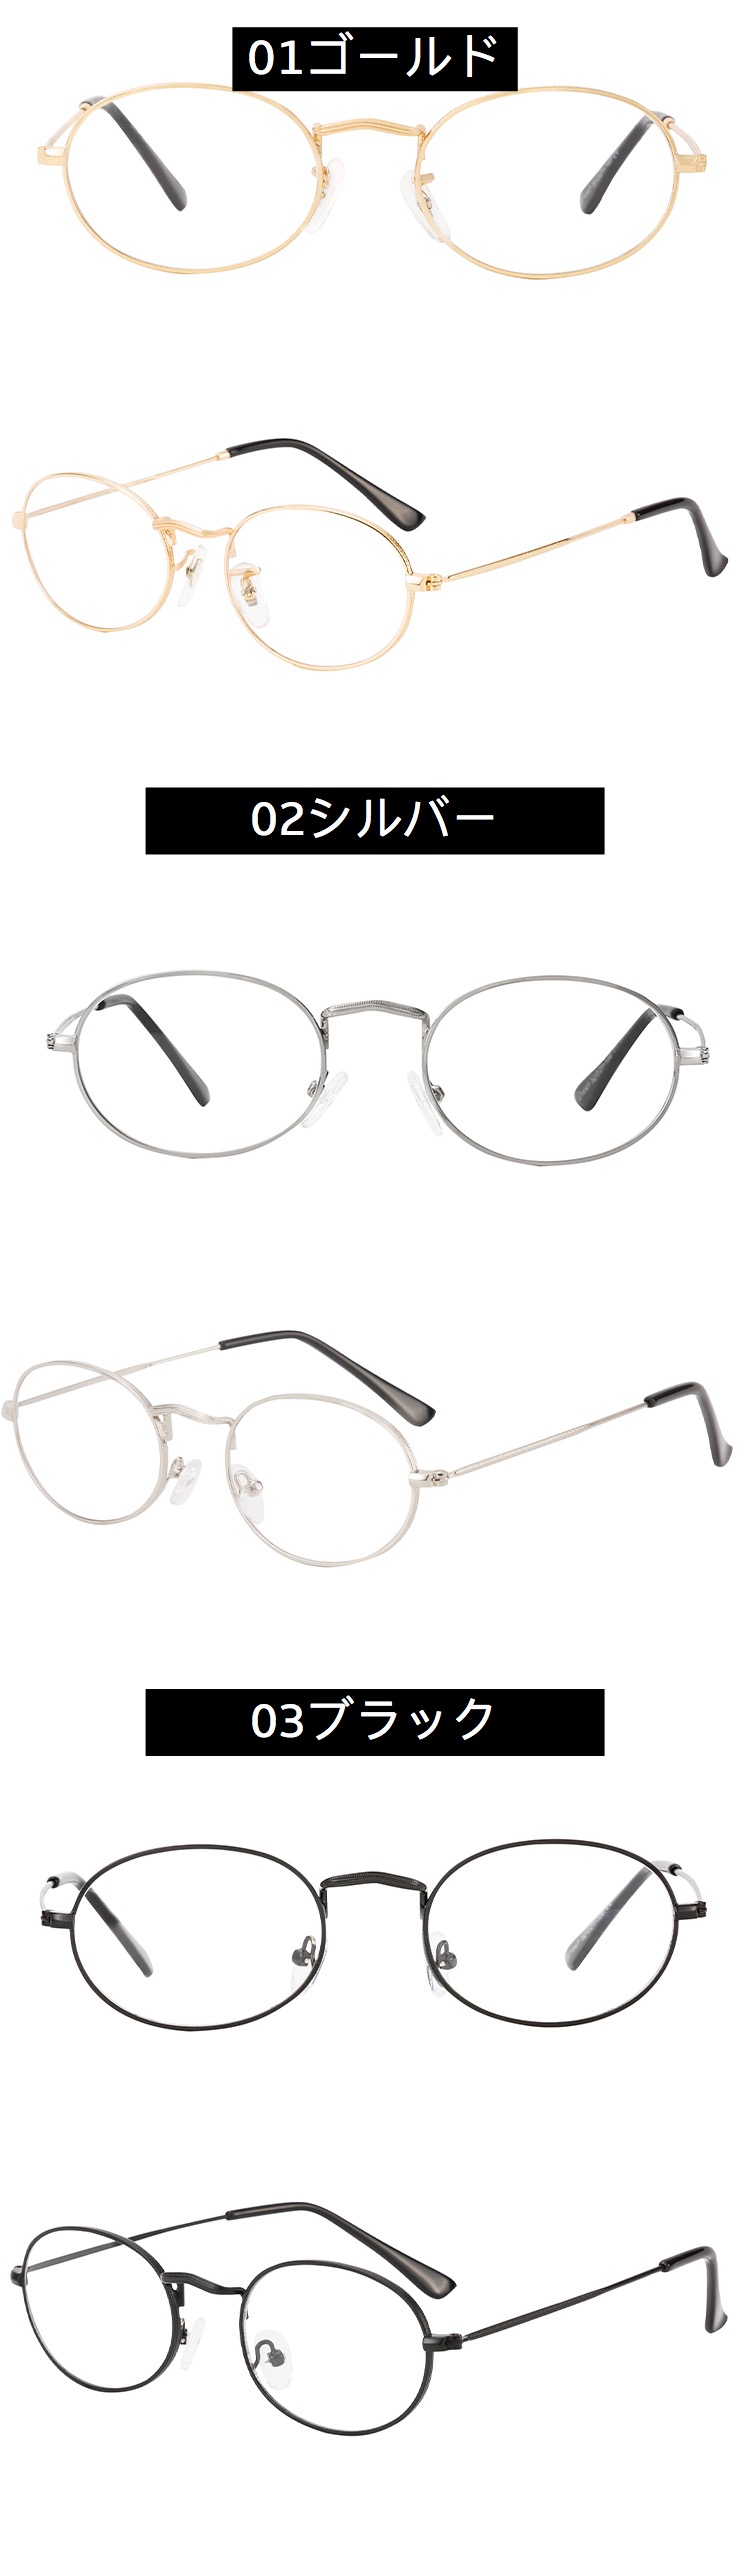 小顔効果眼鏡ダテメガネ韓国おしゃれゴールド知的安いメガネすっぴん隠し